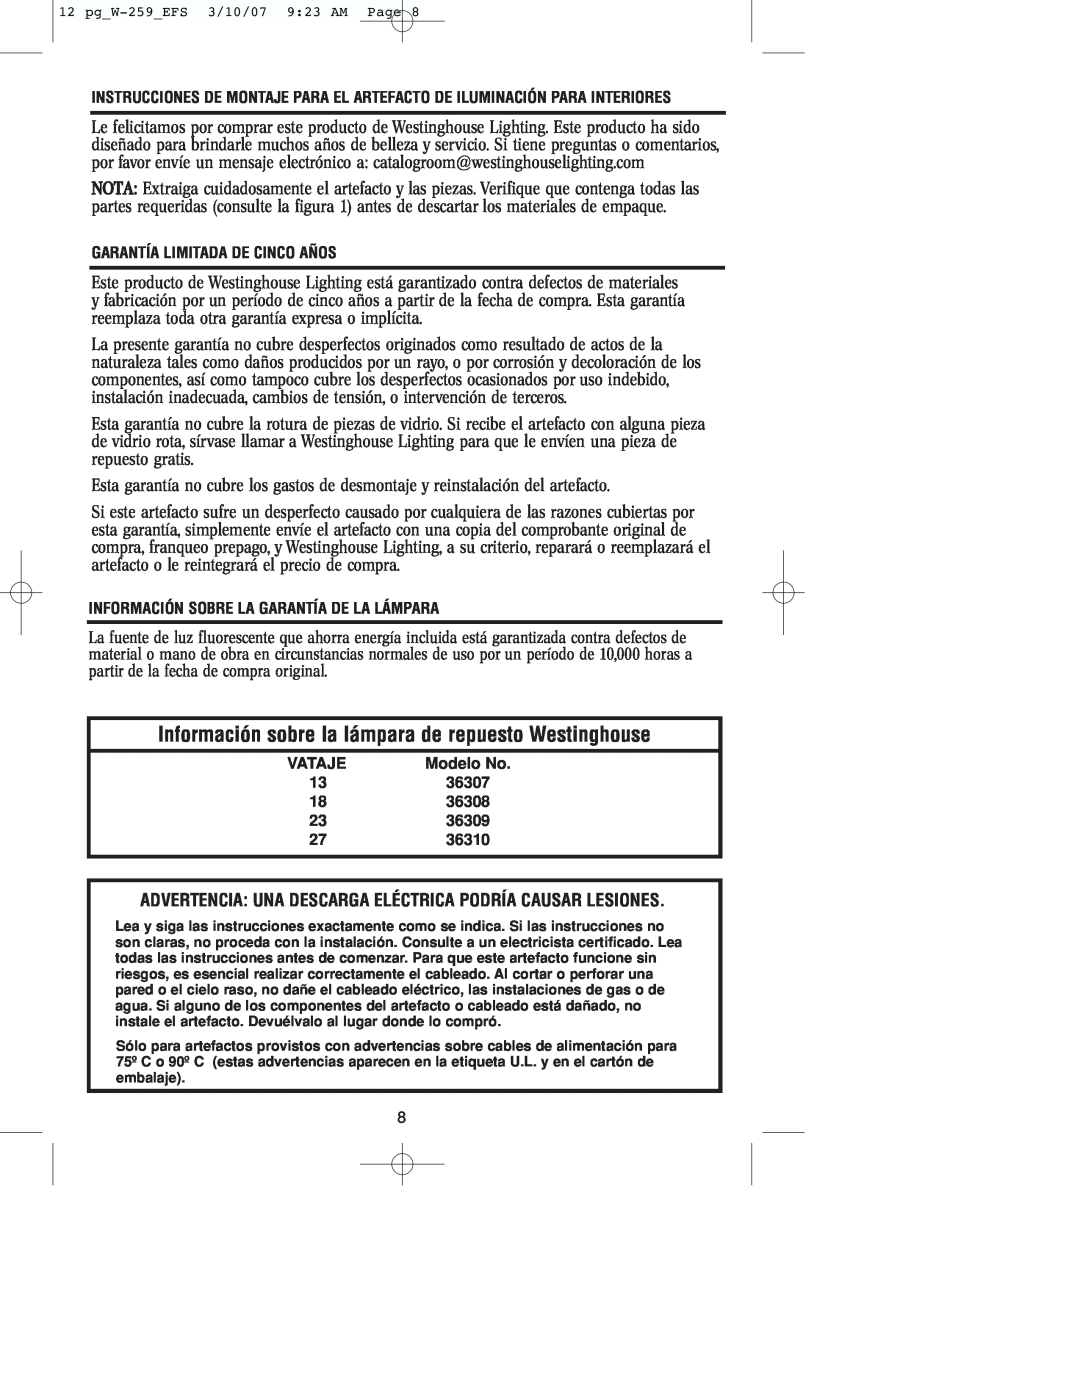 Westinghouse W-259 Garantía Limitada De Cinco Años, Información Sobre La Garantía De La Lámpara, Vataje, Modelo No, 36307 